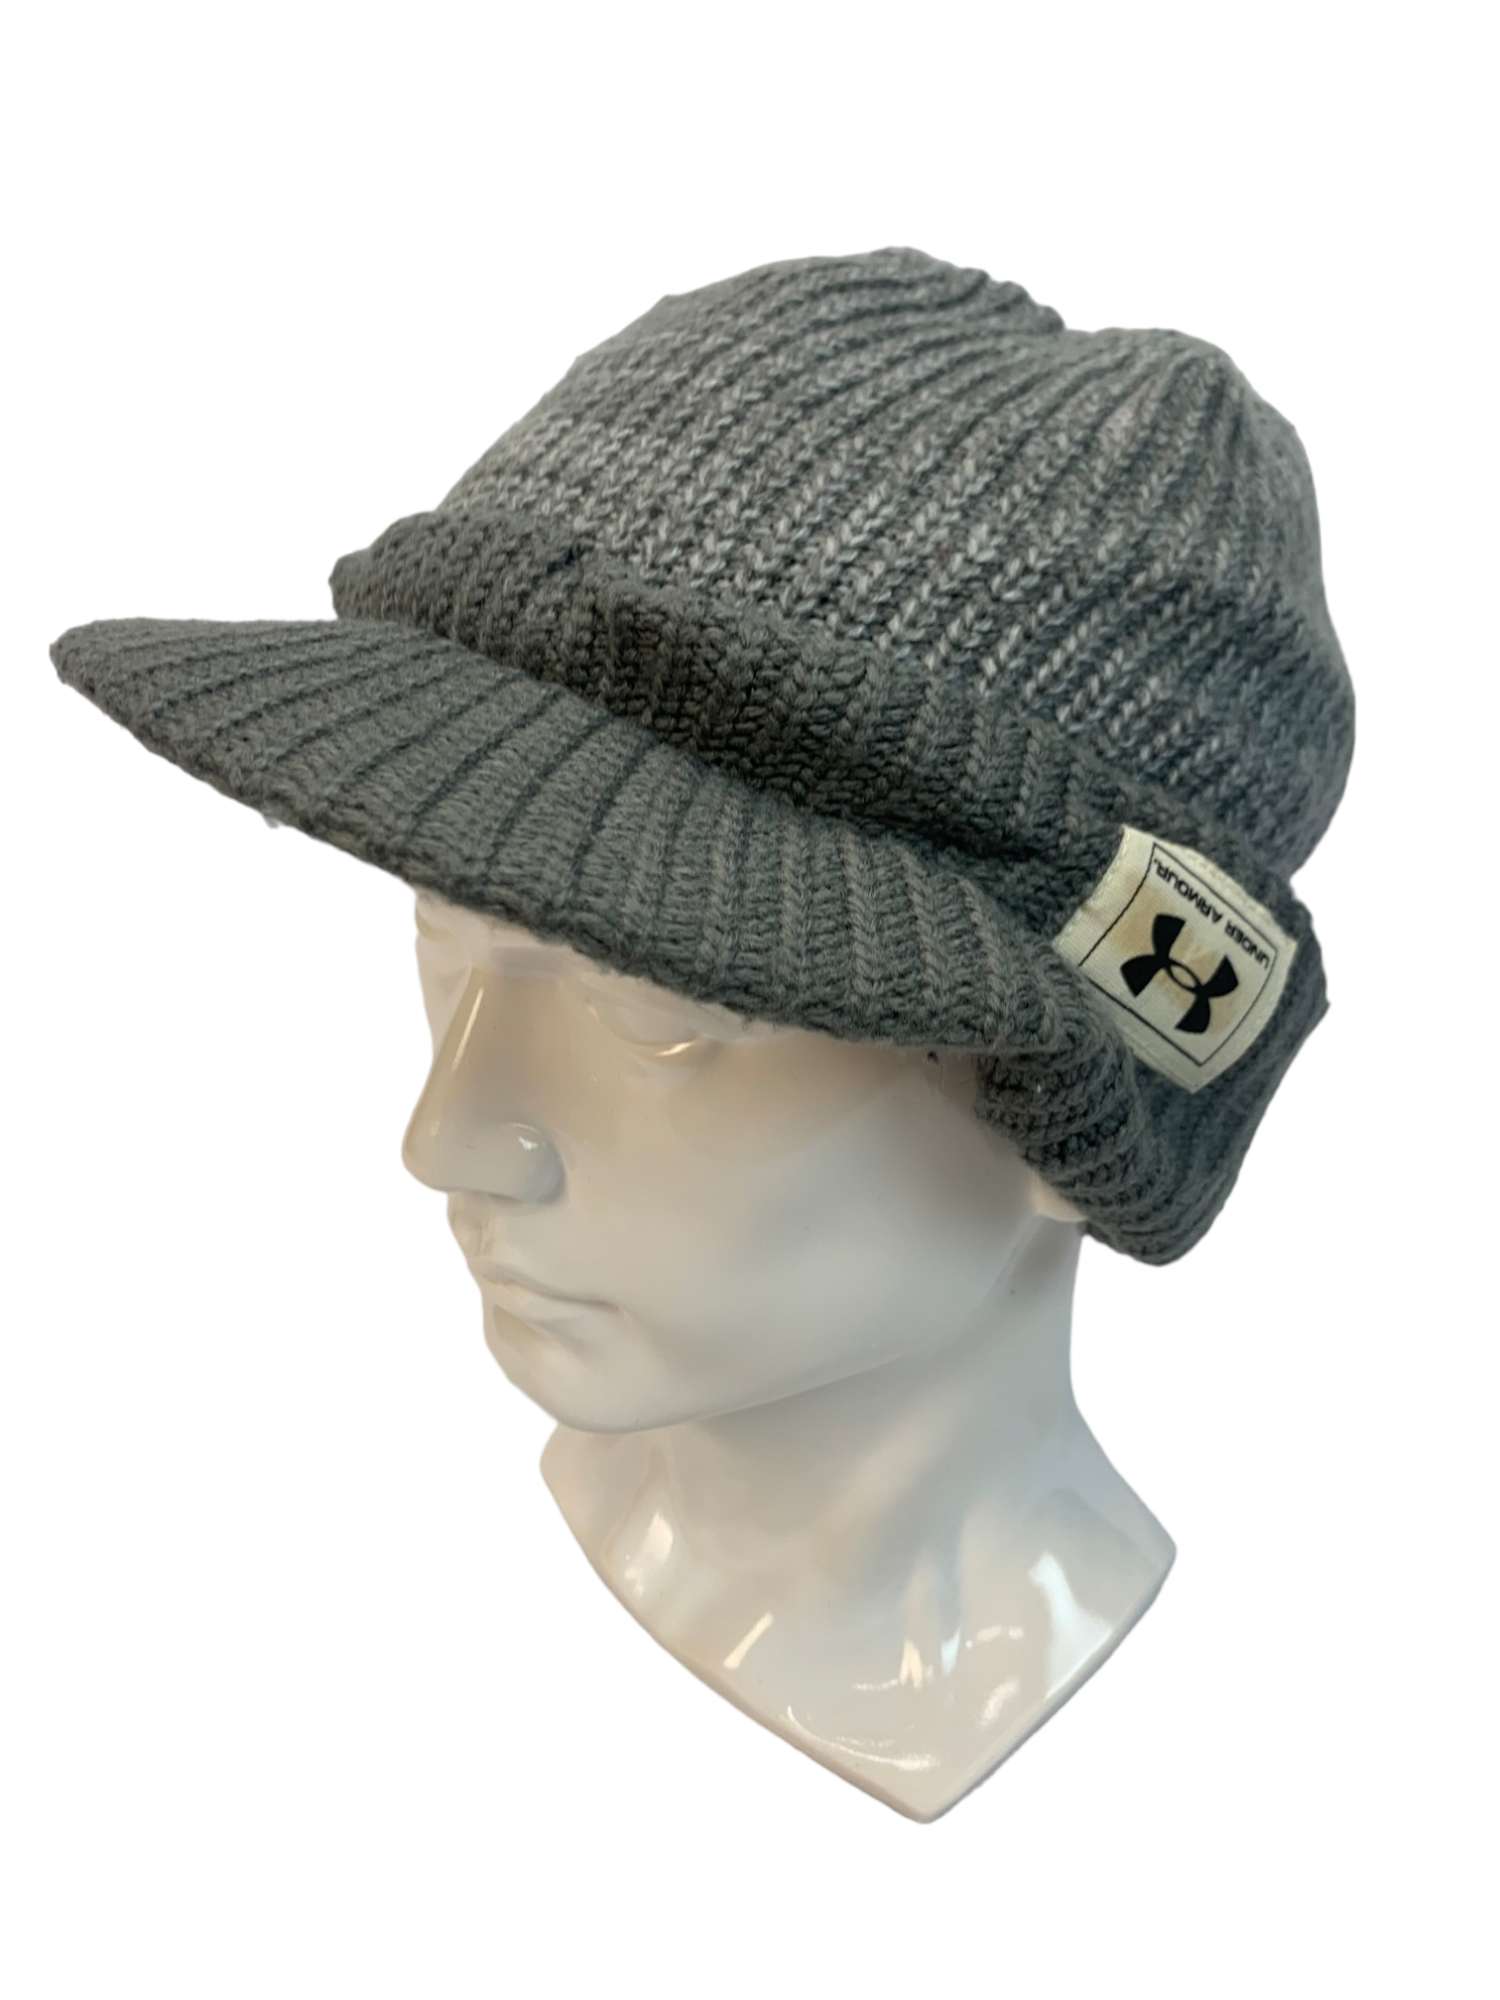 Streetwear - UNDER ARMOUR STREETWEAR BEANIE HAT CAP - 5